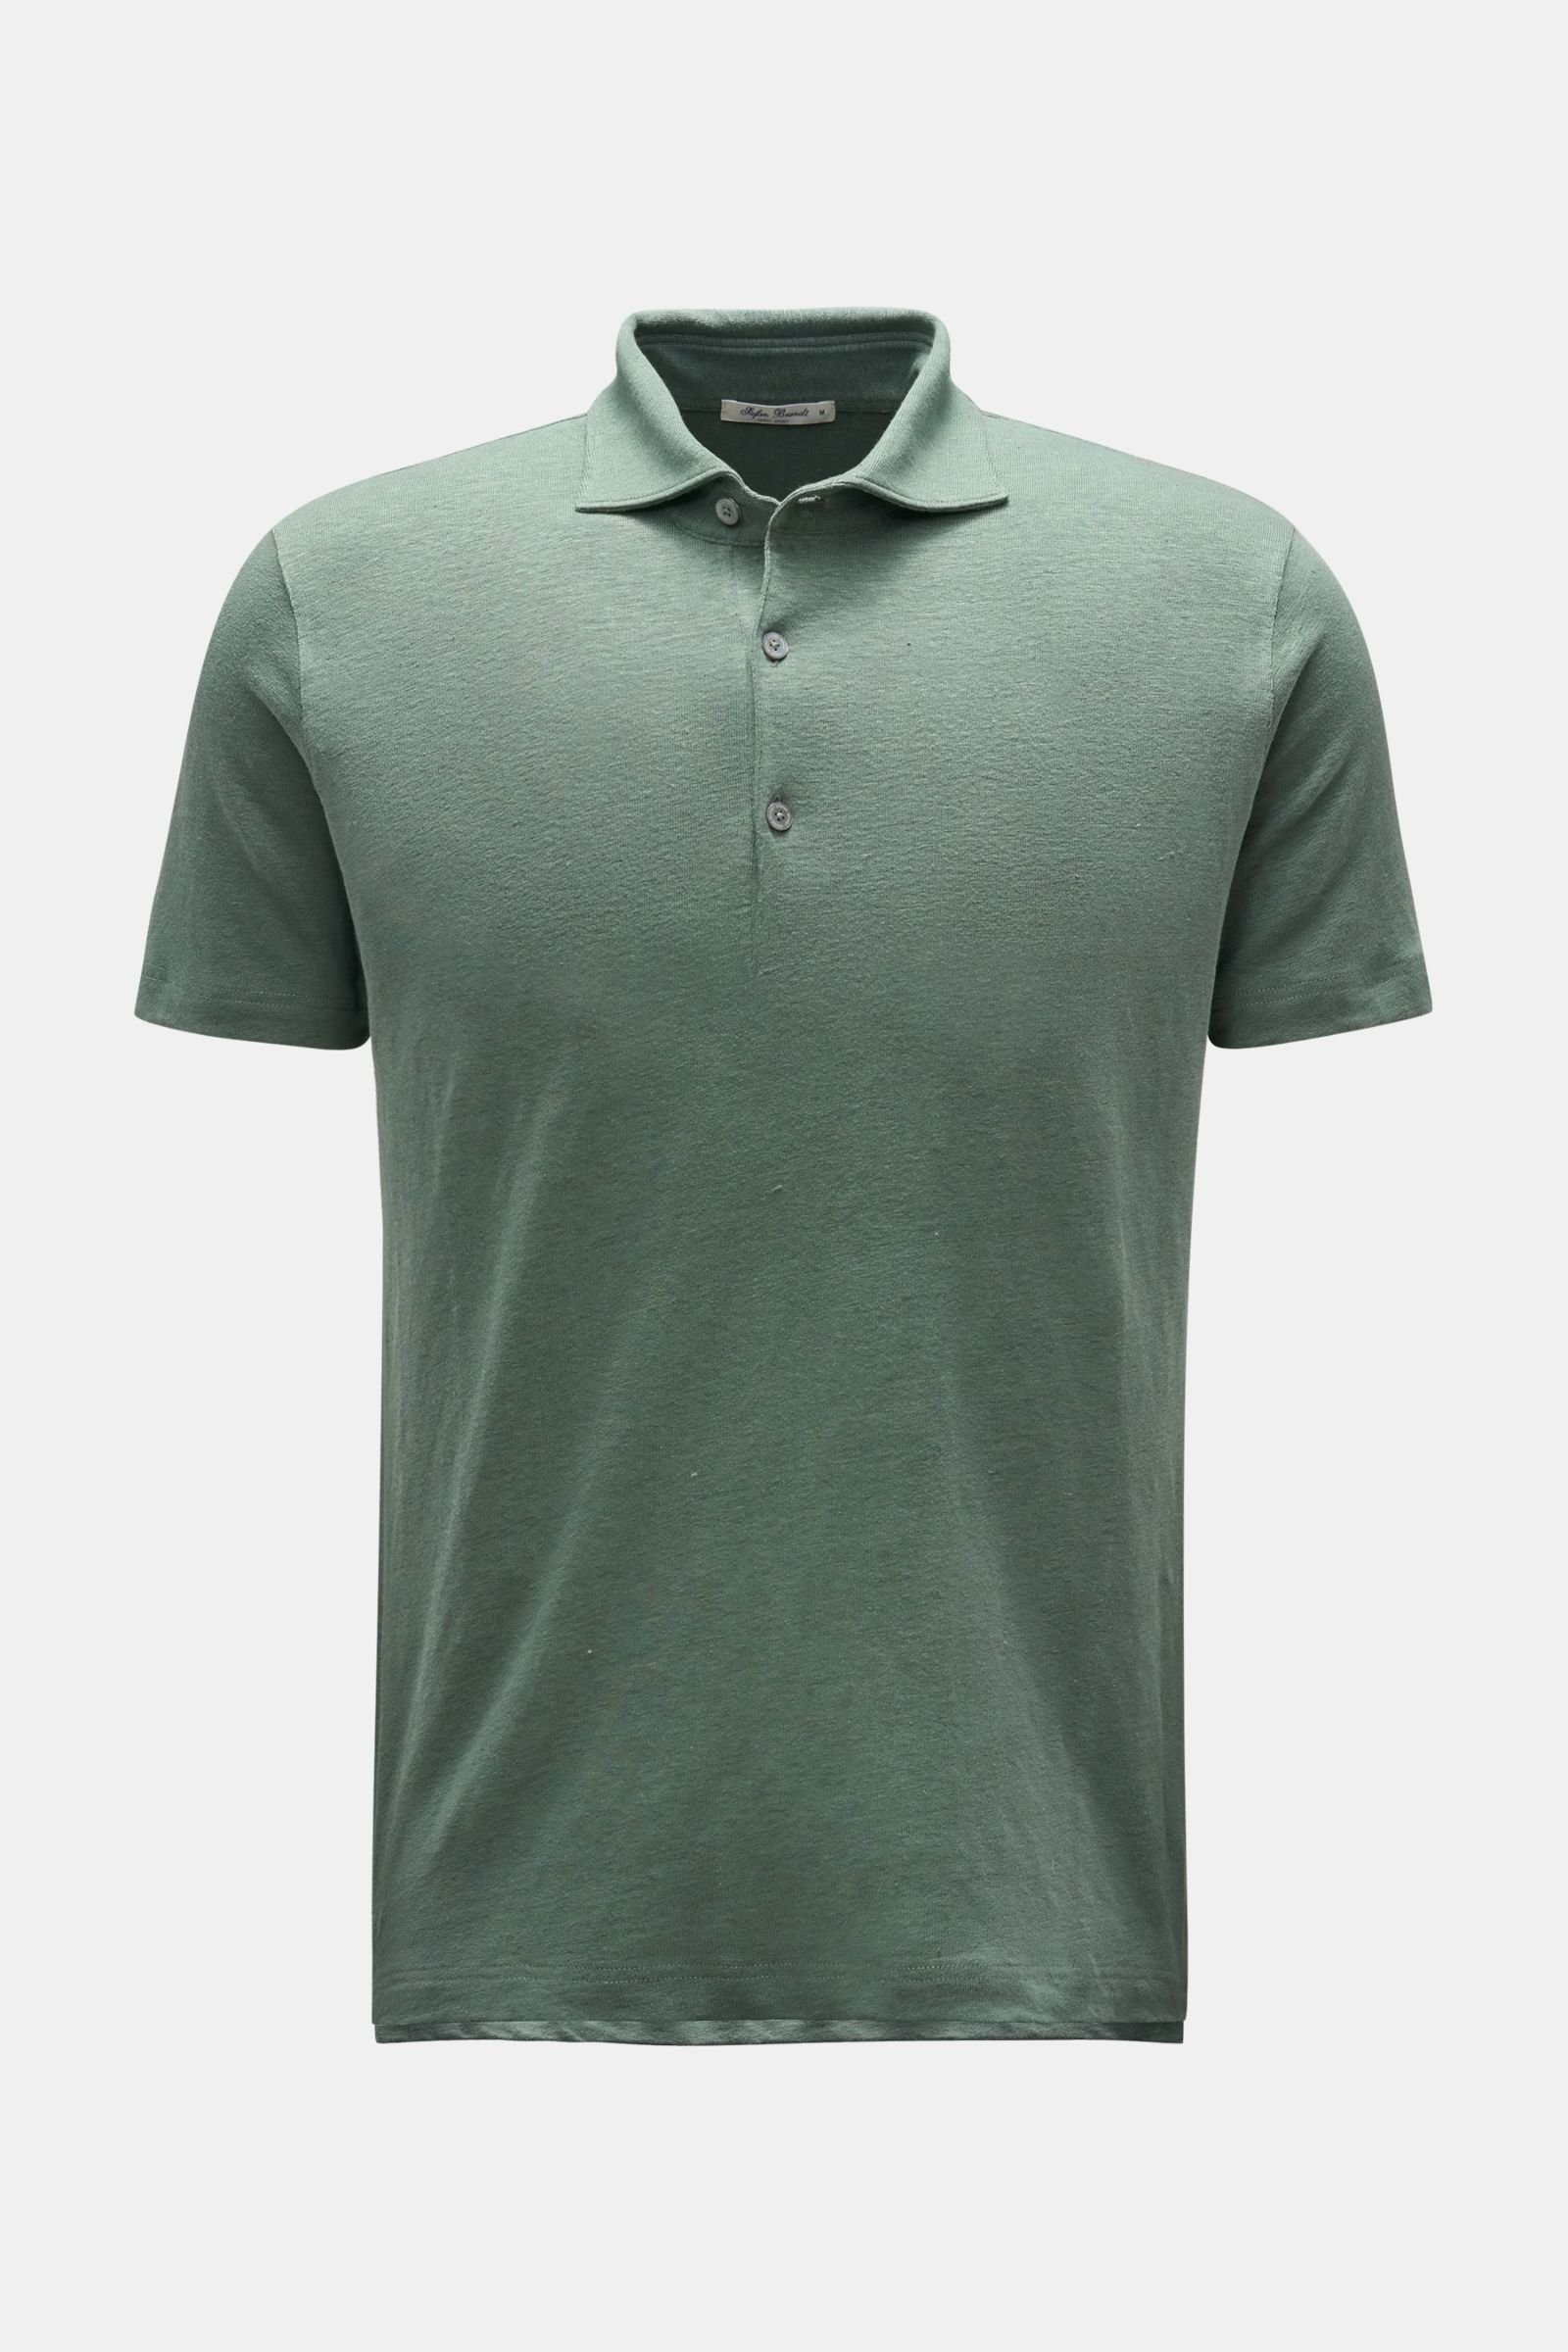 Leinen Jersey-Poloshirt 'Laurin' graugrün